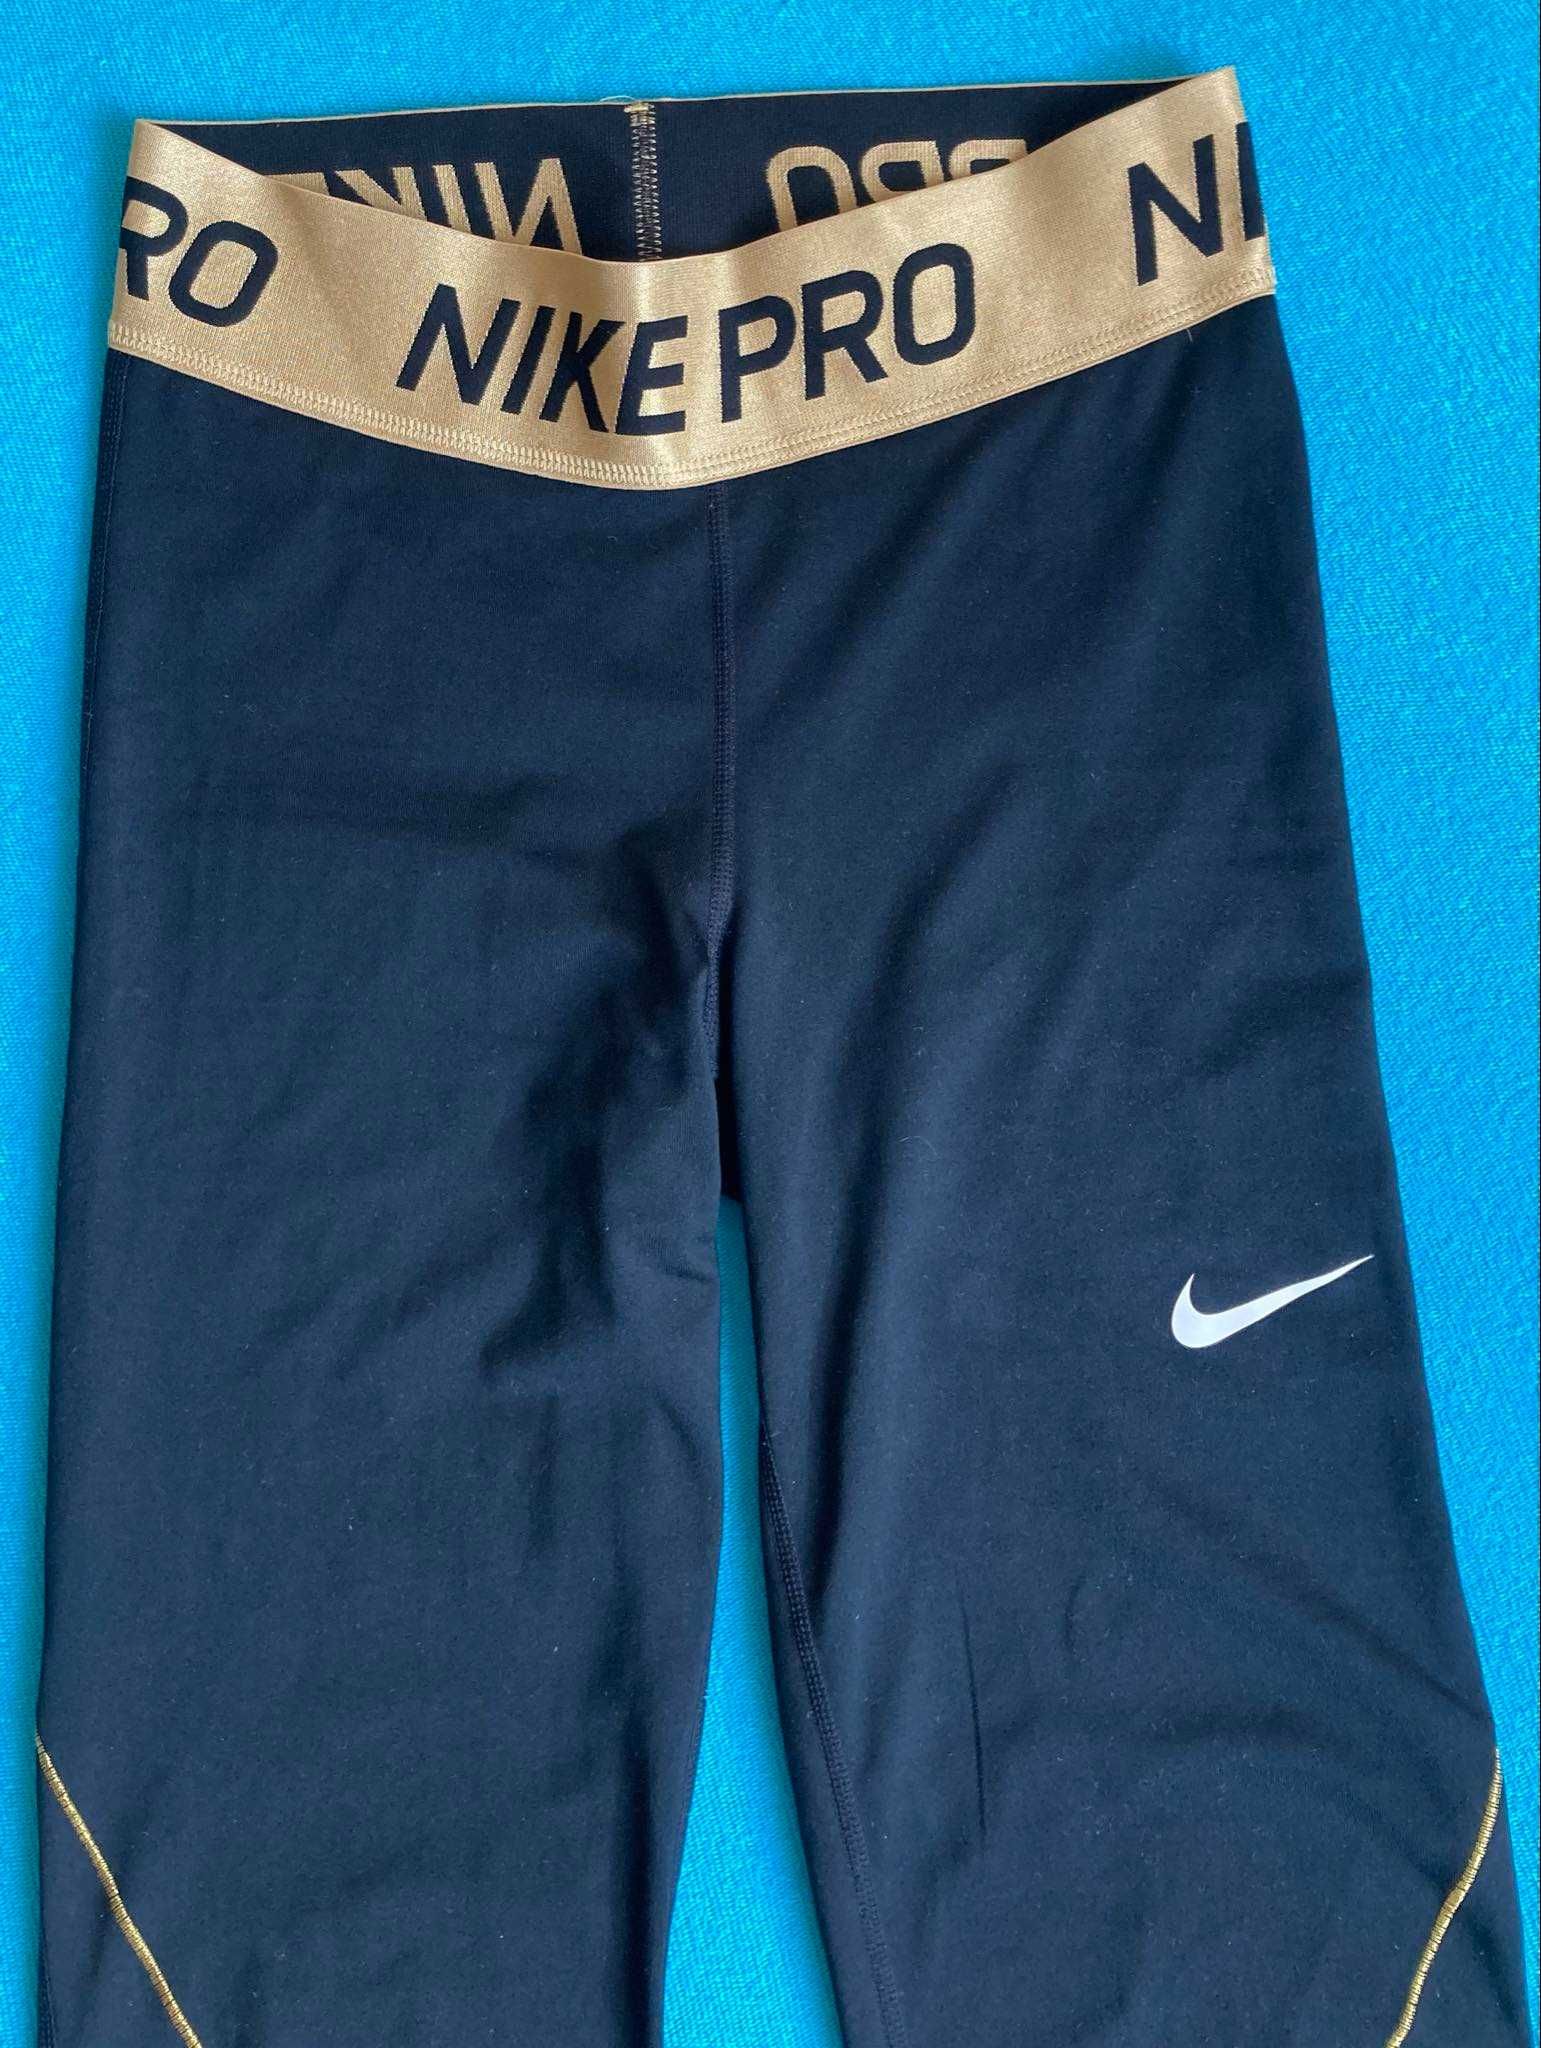 Leginsy Nike Pro roz. XL